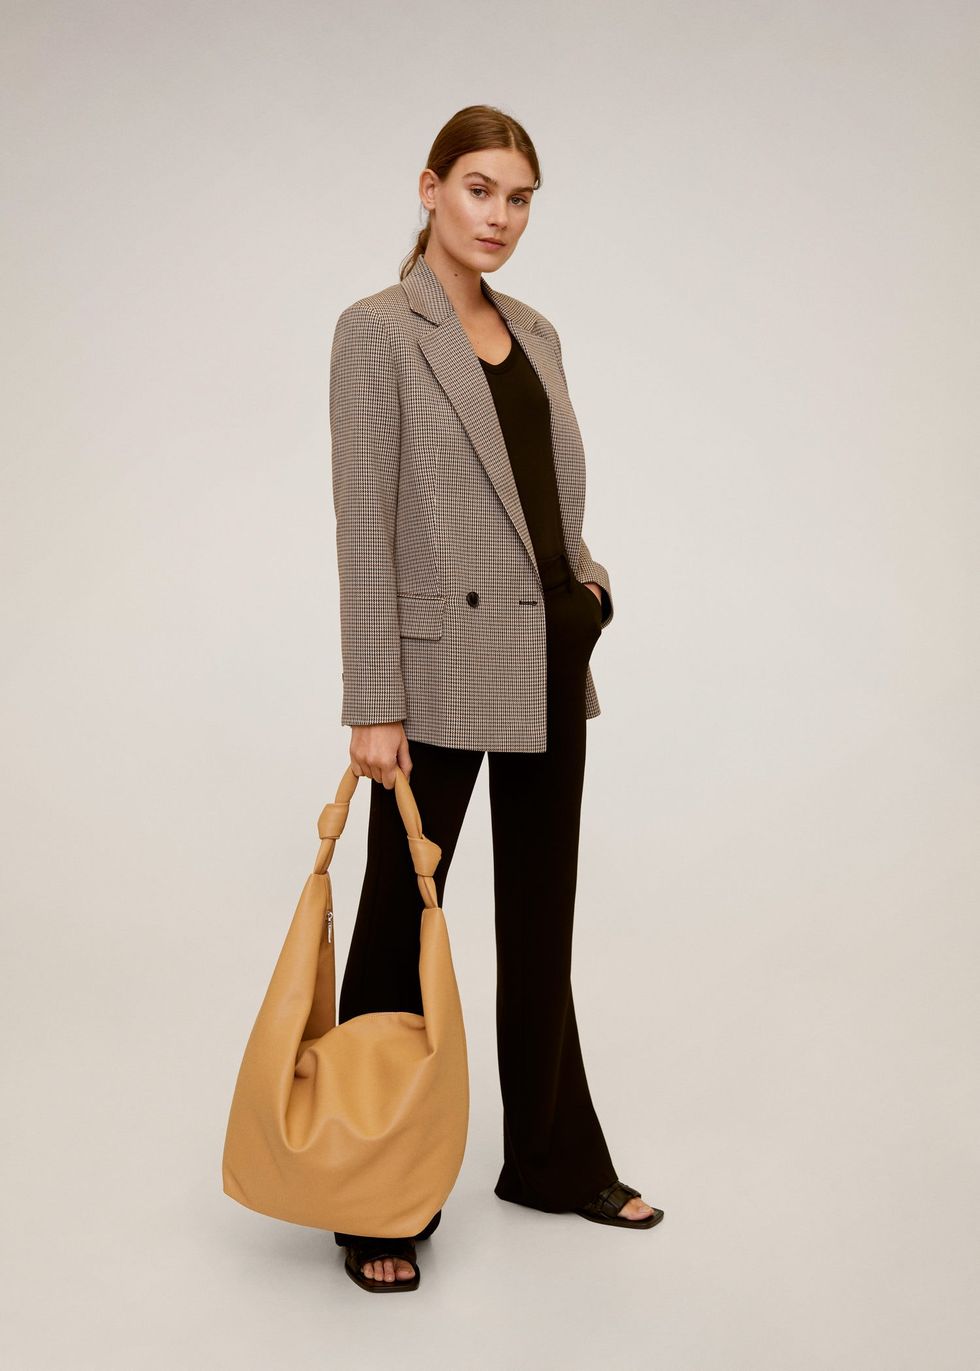 shopping americanas de entretiempo para usar como abrigo de Zara, Sfera, Uterqüe, Mango, Massimo Dutti, H&M y Primark